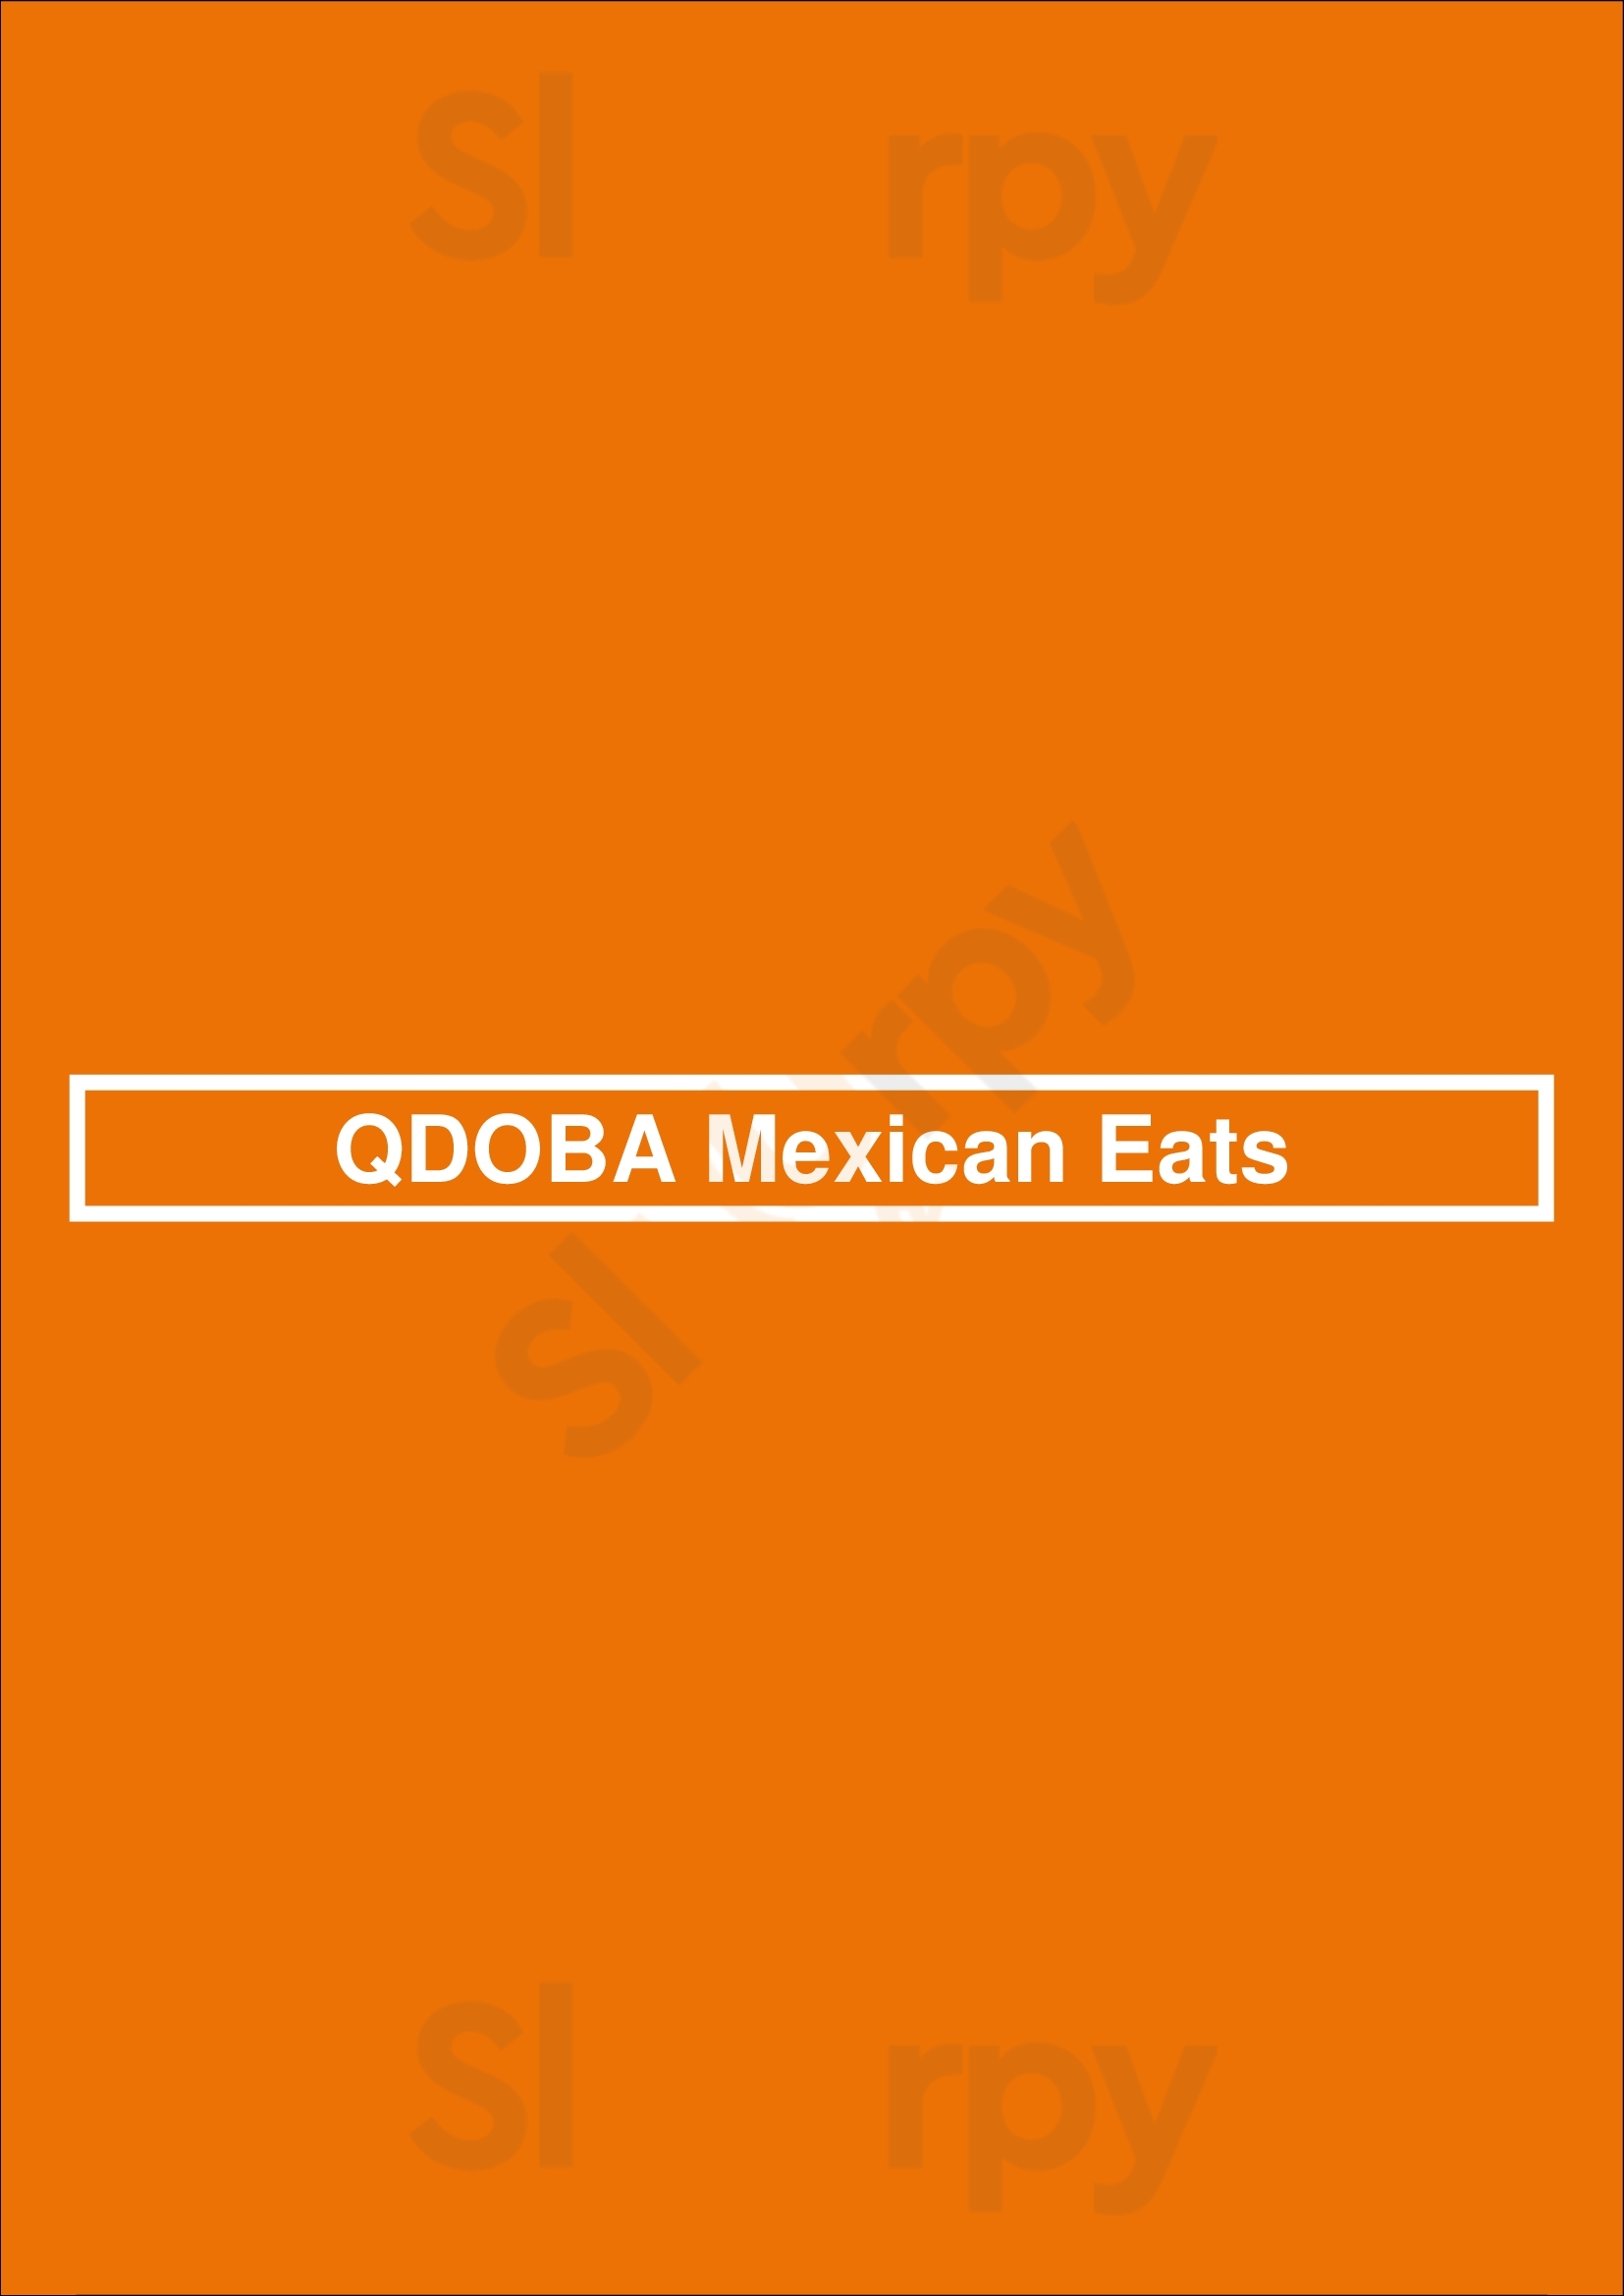 Qdoba Mexican Eats Winnipeg Menu - 1